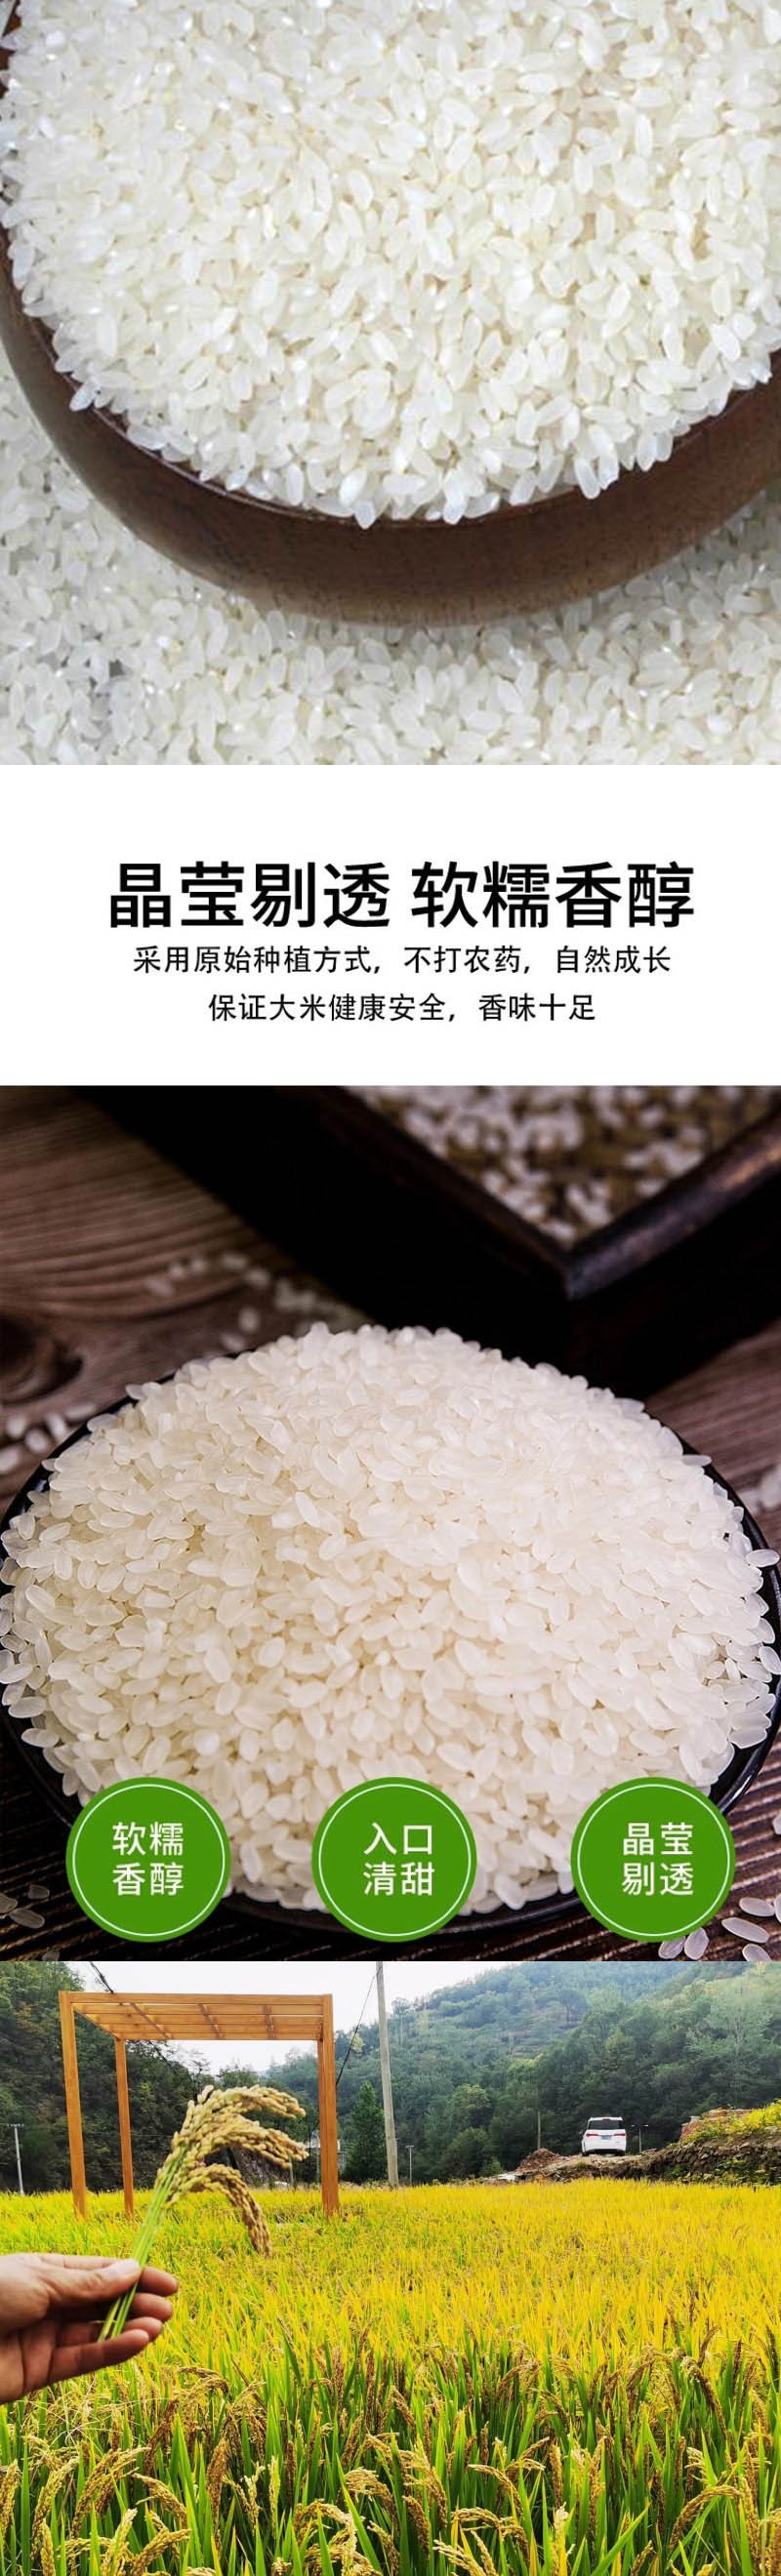  手绘小镇 洛阳农品 农家高品质长粒香大米5kg山泉米